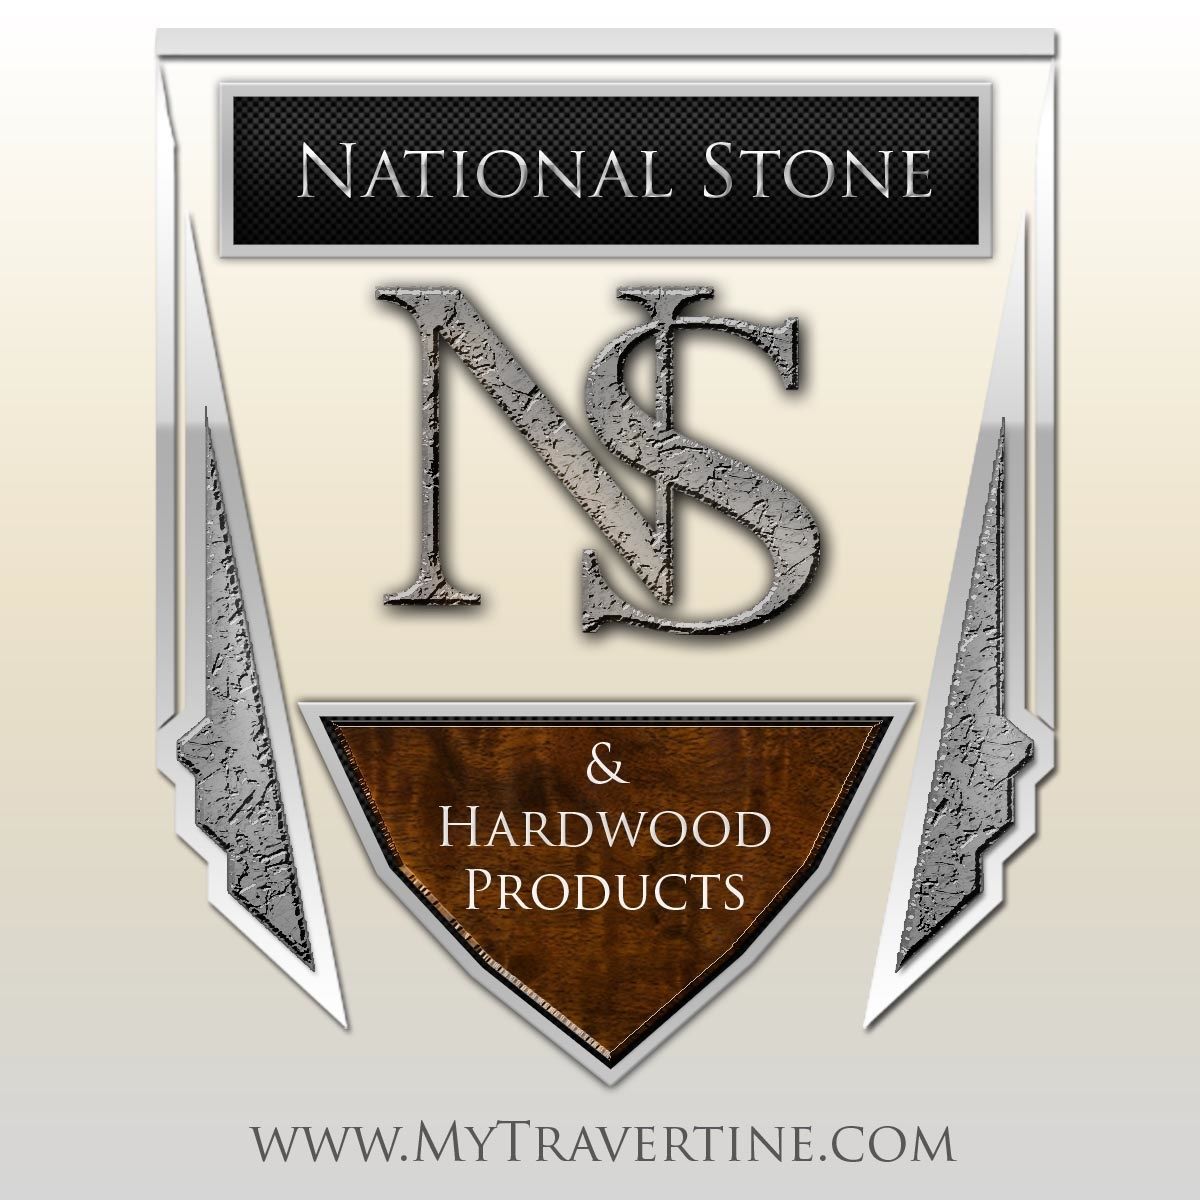 National Stone & Hardwood Products